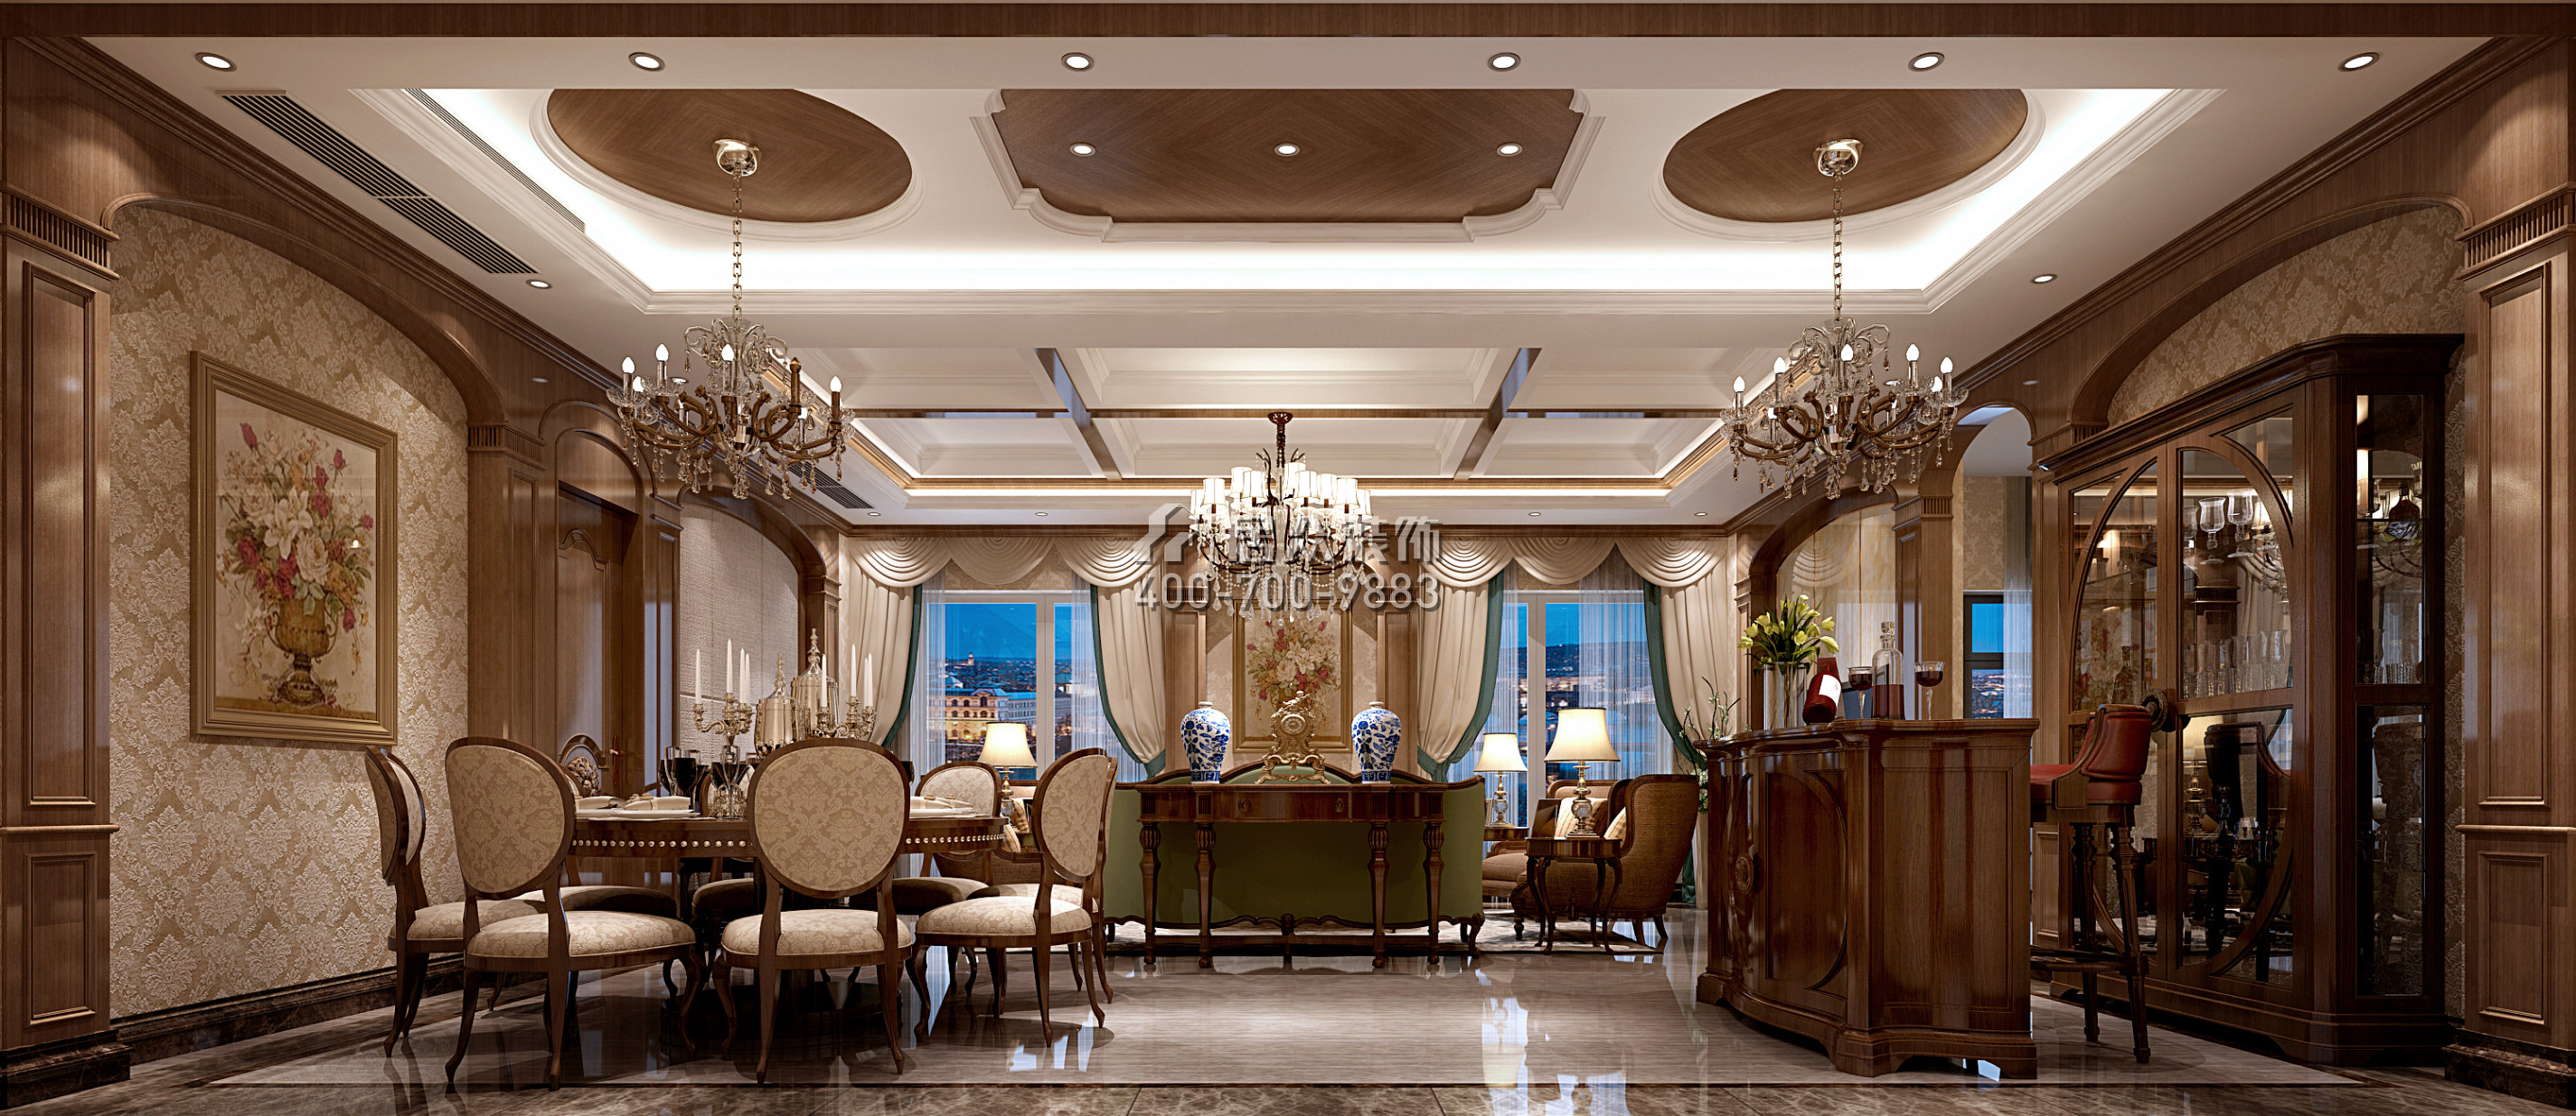 海印长城220平方米美式风格复式户型客餐厅一体装修效果图